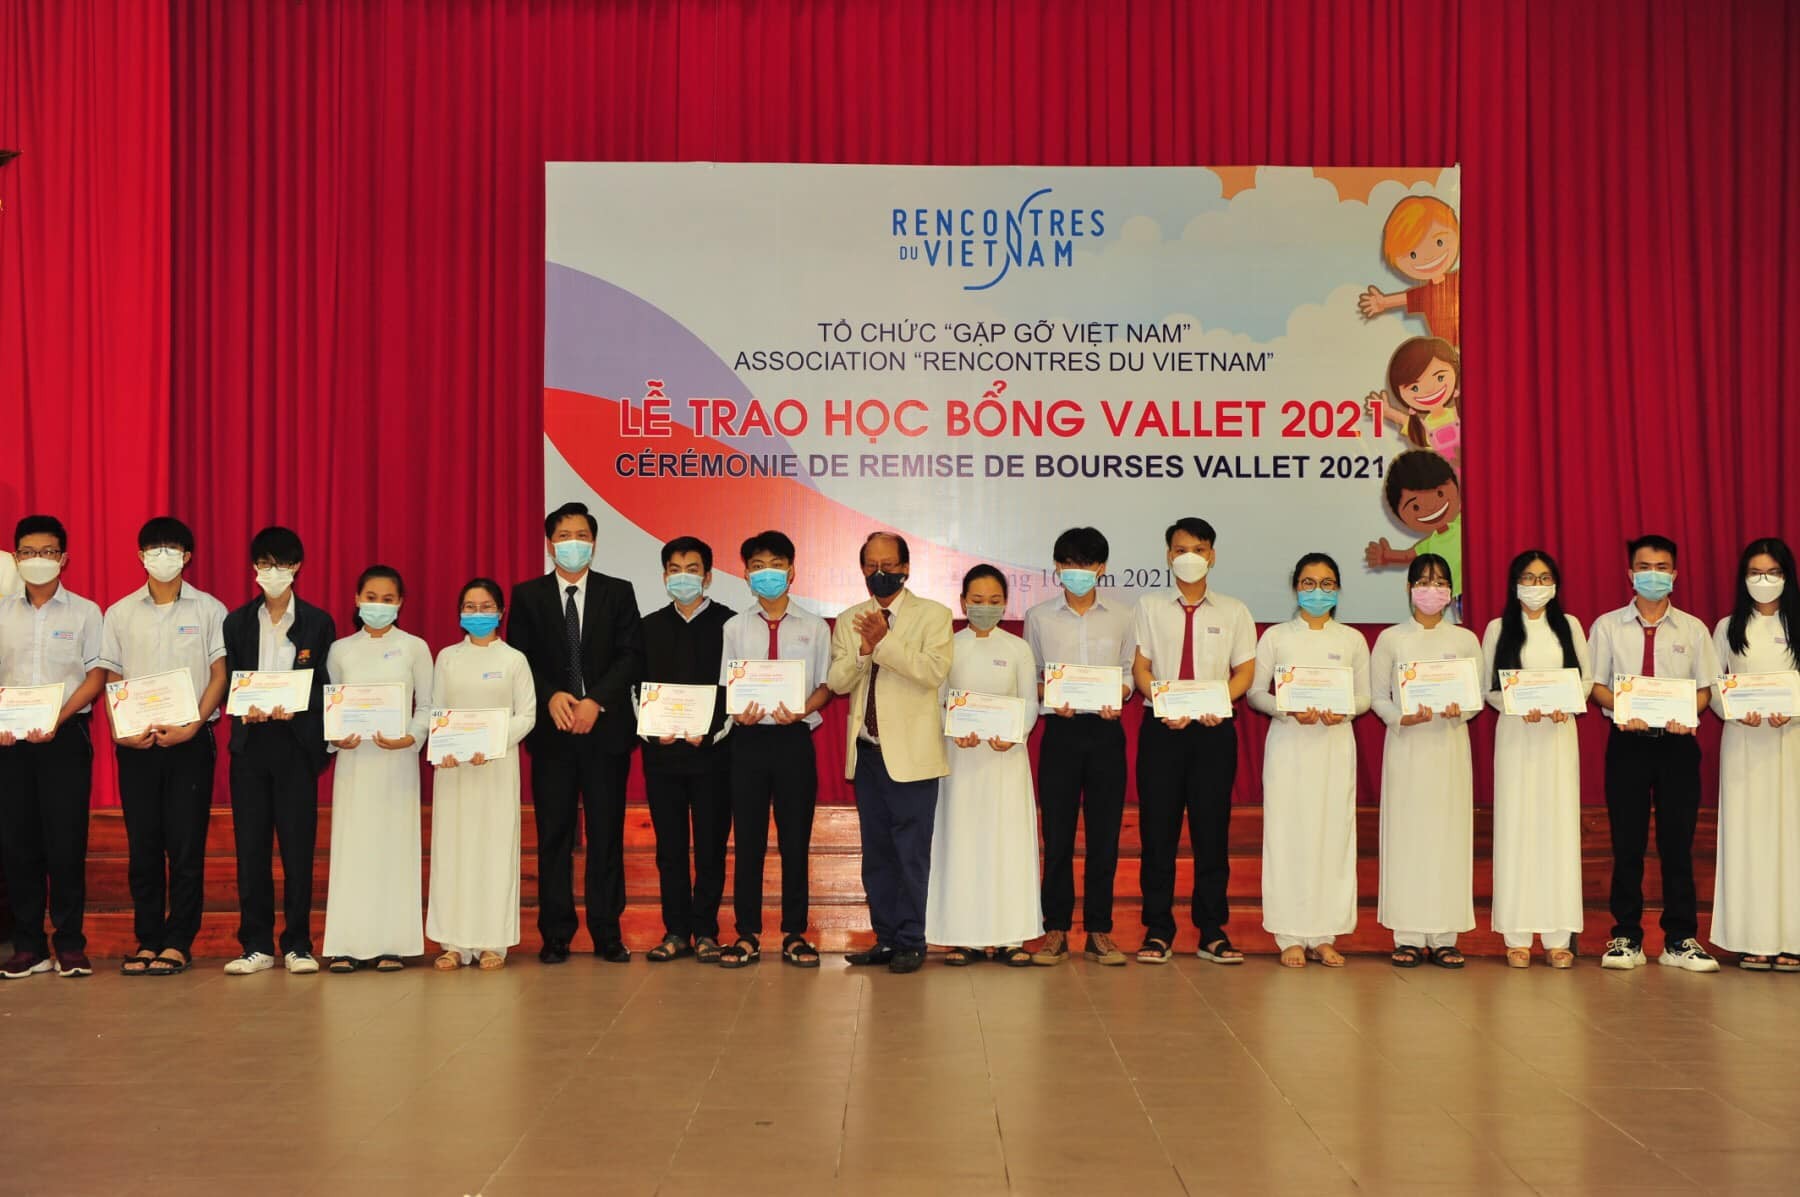 Tổ chức Gặp gỡ Việt Nam trao học bổng cho các em học sinh, sinh viên Việt Nam xuất sắc vào năm 2021 (Ảnh: Gặp gỡ Việt Nam).